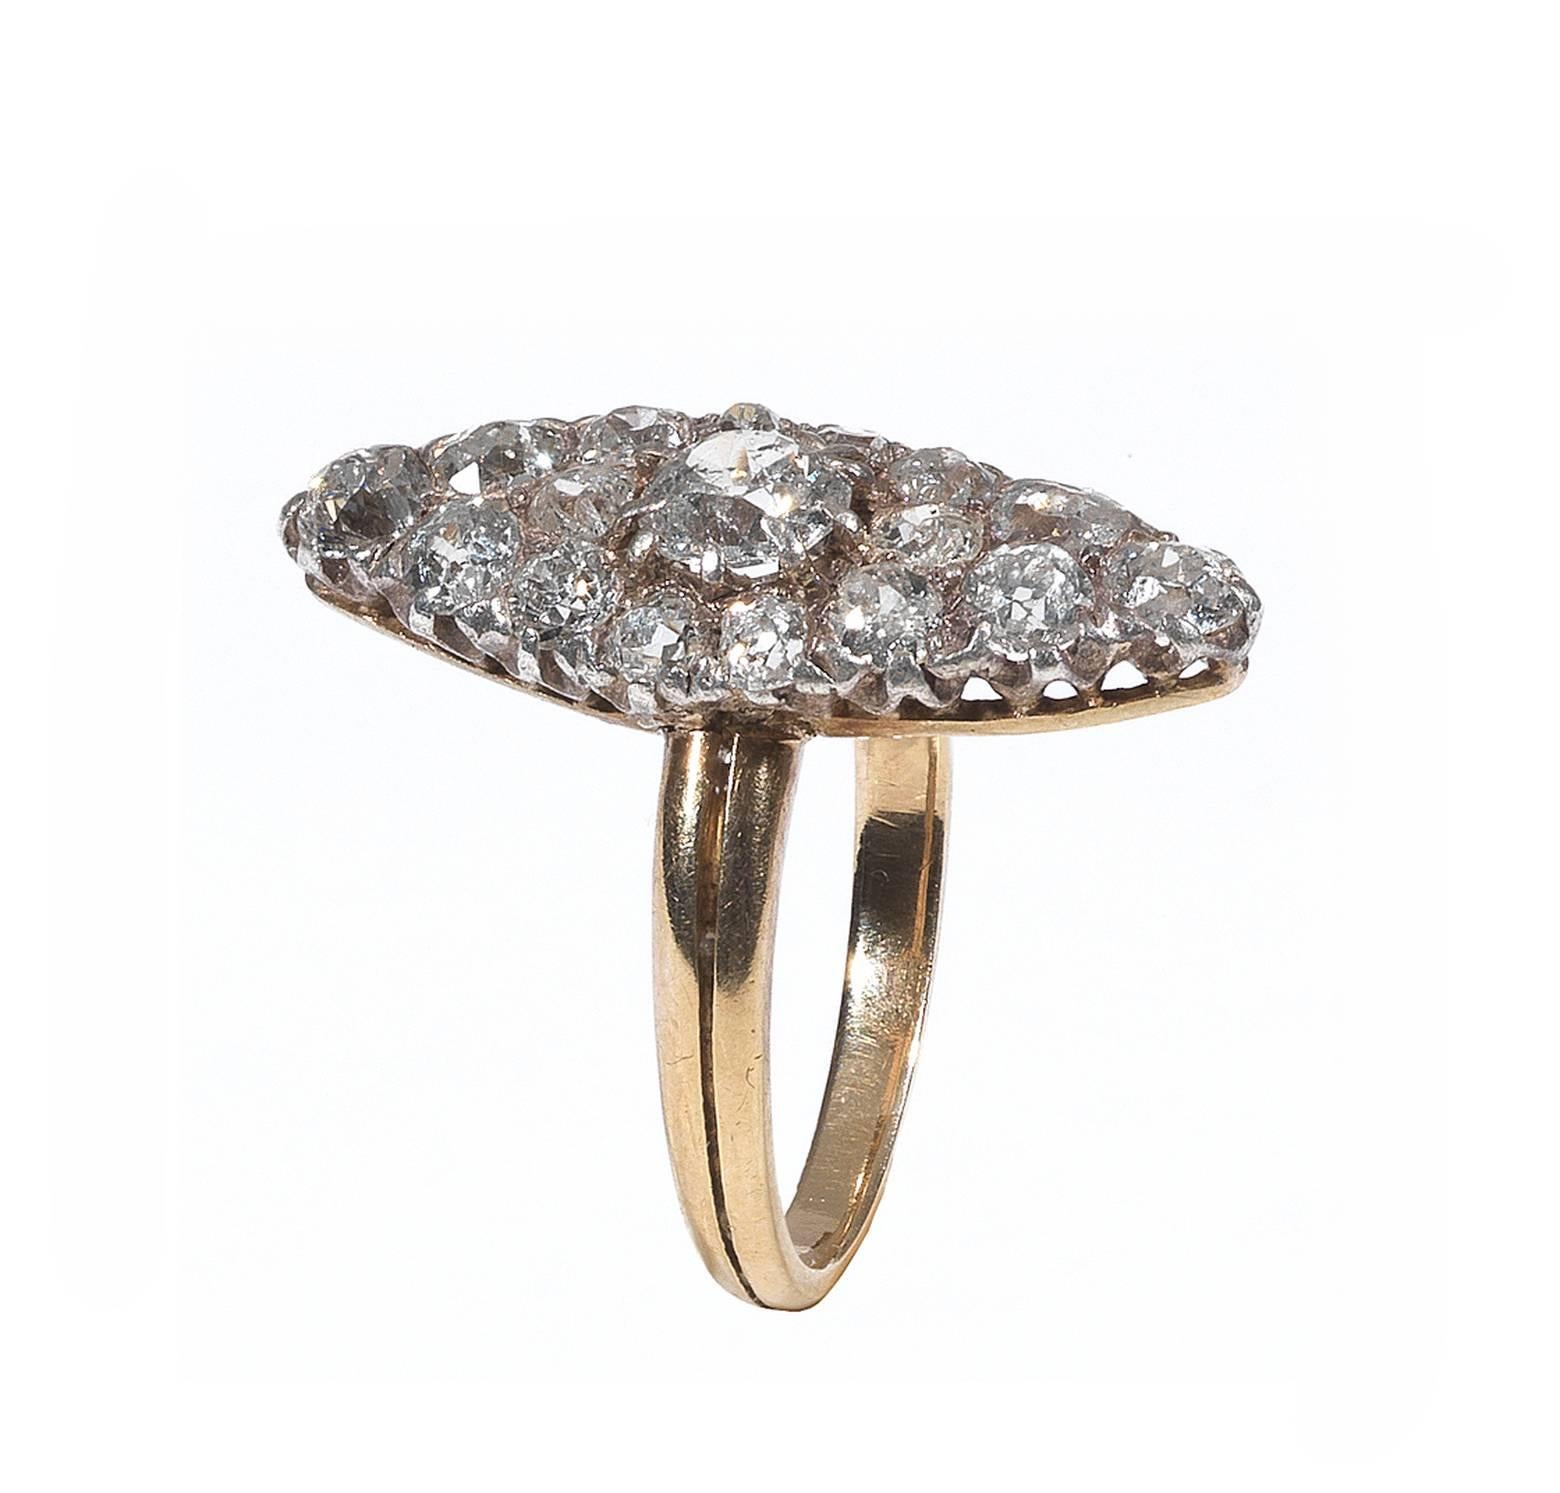 Marquise Form, besetzt mit alten Diamanten im Brillantschliff mit einem Gewicht von ca. drei Karat, an einem Goldschaft.

Lünette 2,3 cm x 1,0cm.

Fingergröße: 6 1/2

Gewicht: 4 gr
